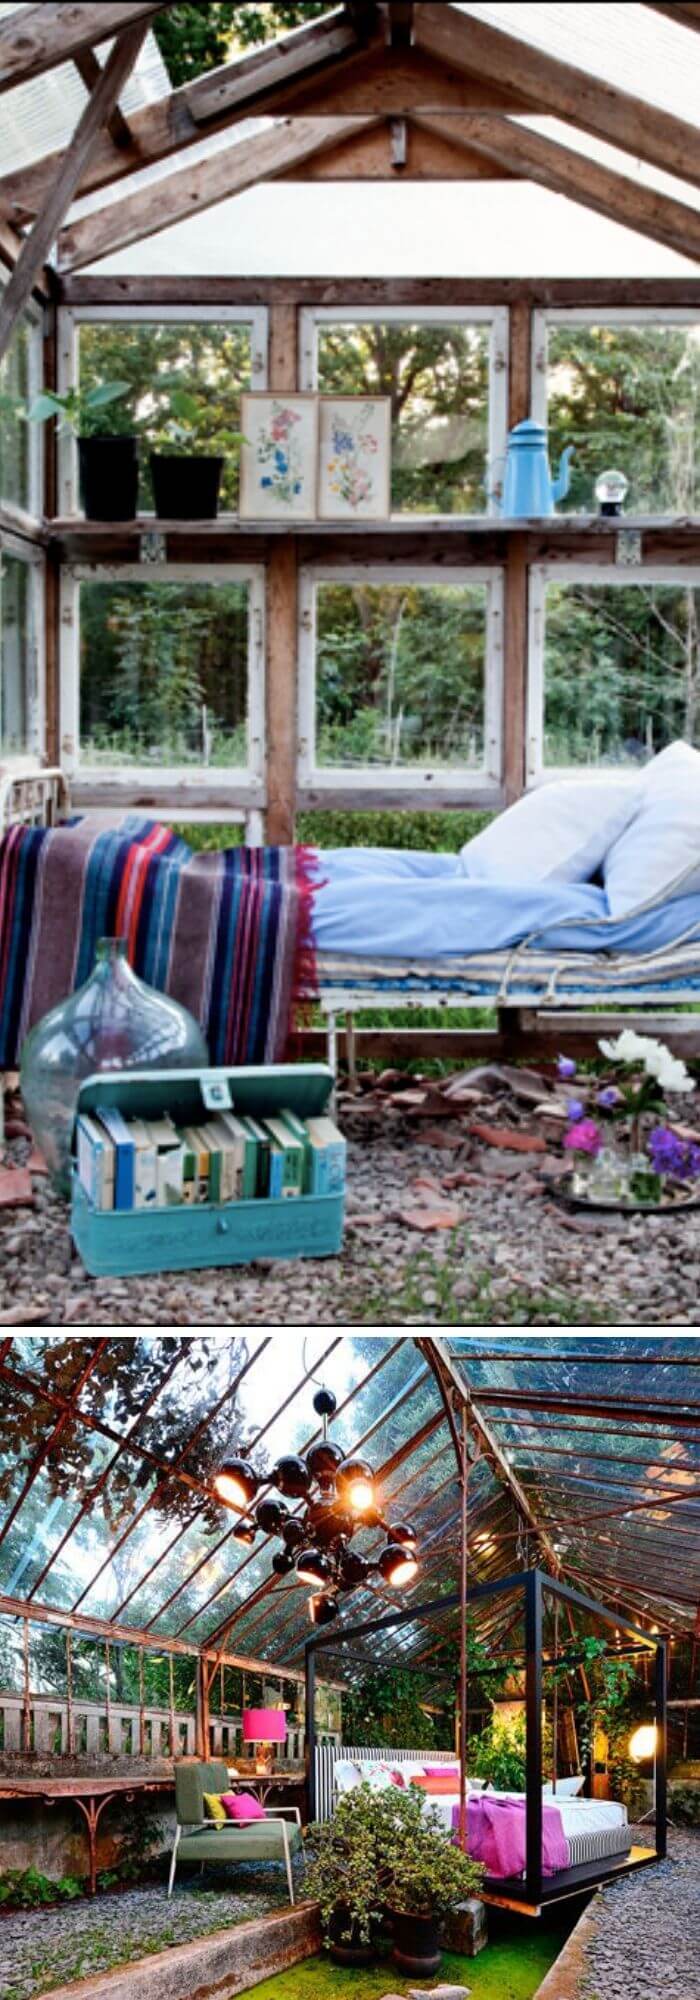 16 outdoor bedroom ideas